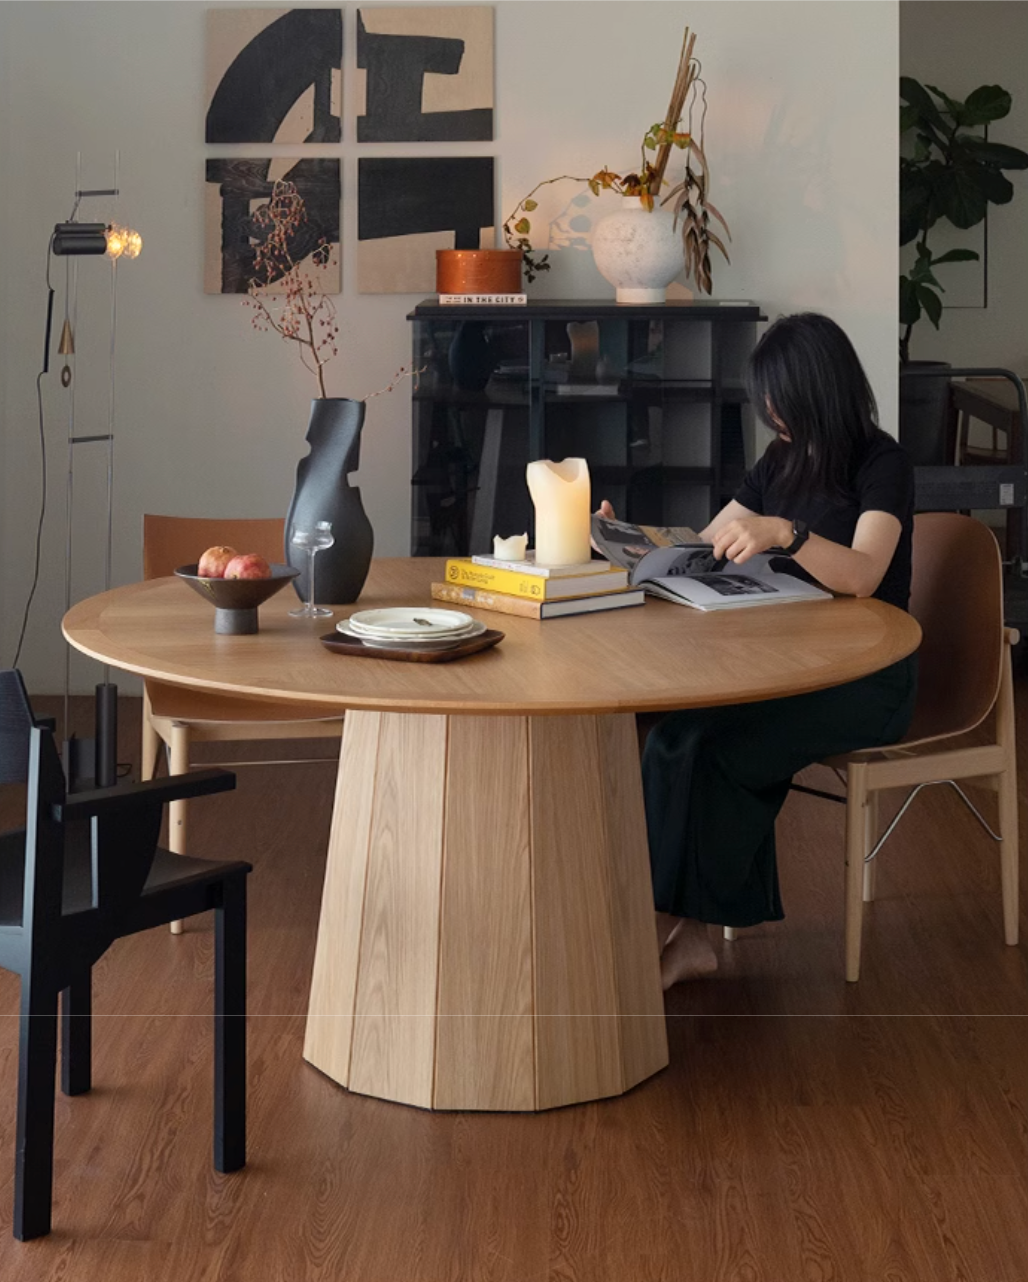 GATHERING ROUND TABLE  Ziinlife Modern Design Furniture Hong Kong  